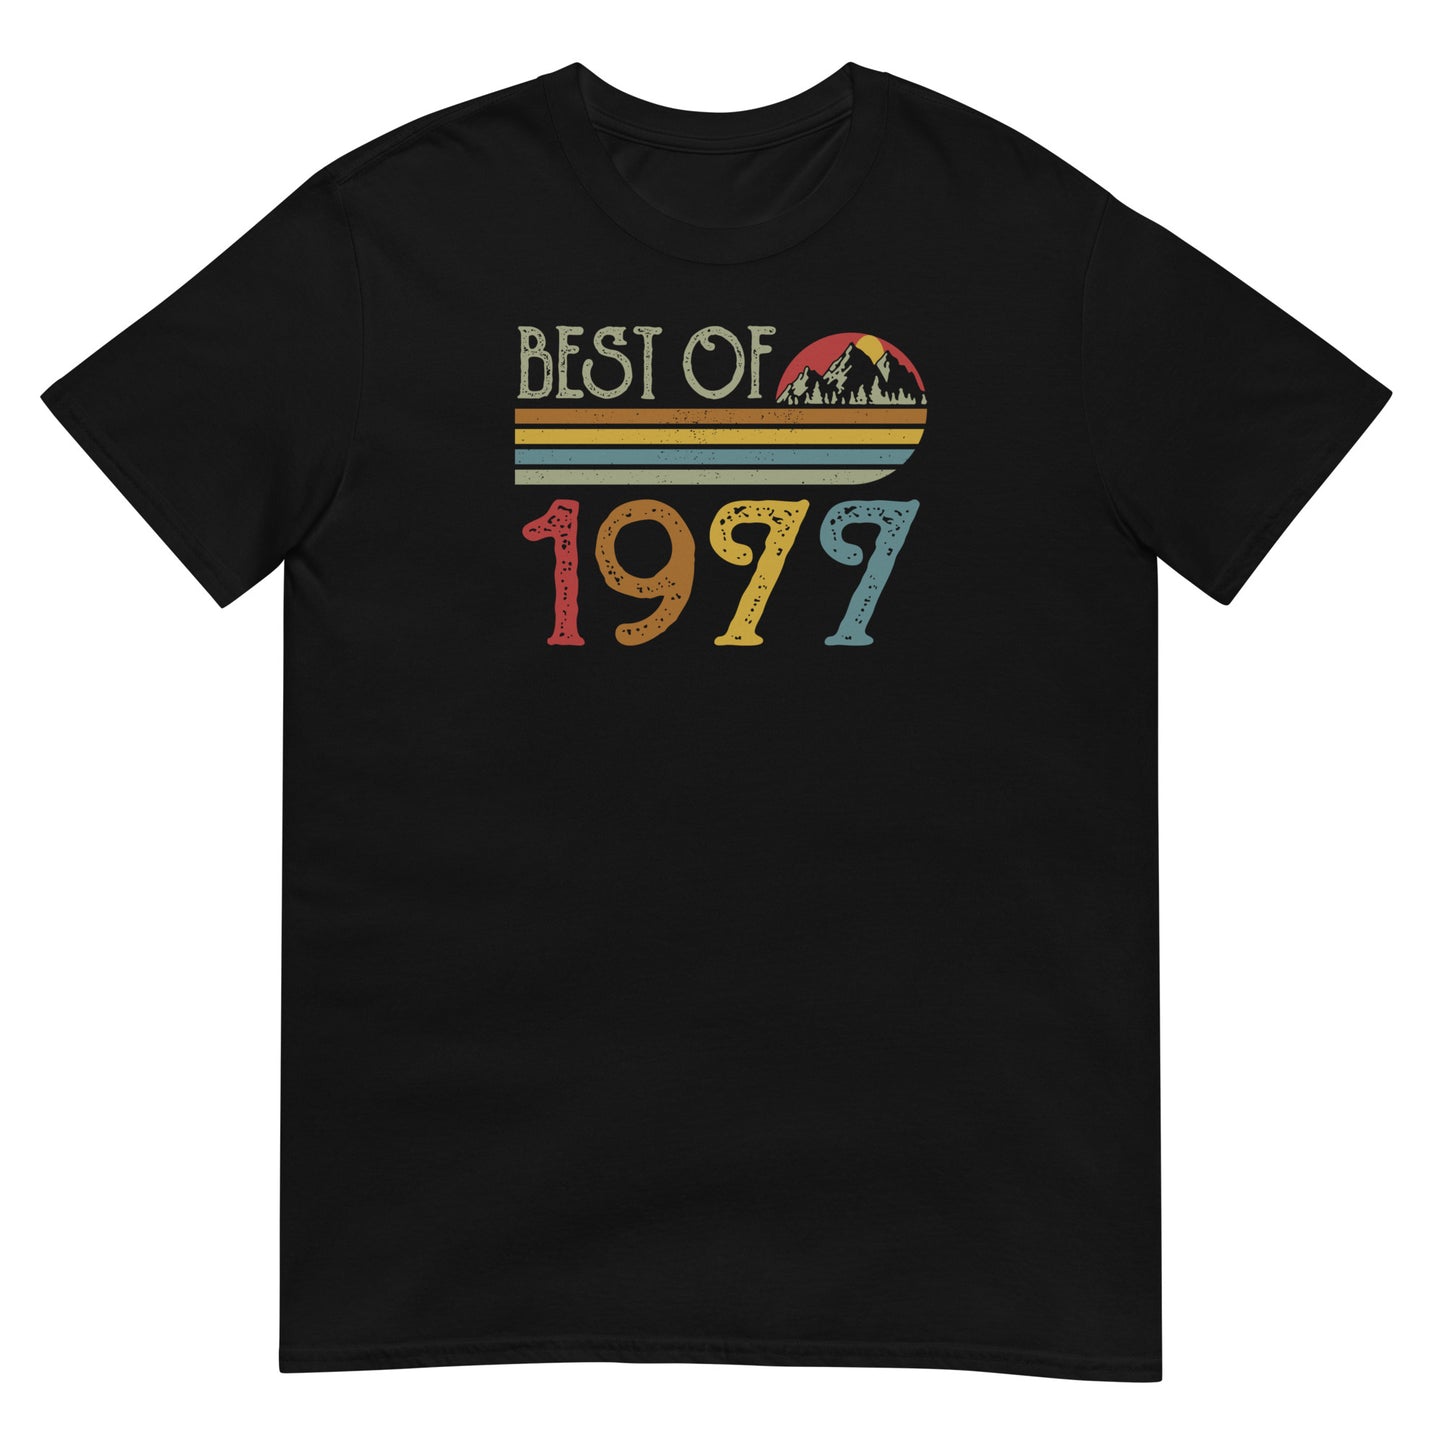 Camiseta Best Of 1977 - Cumpleaños